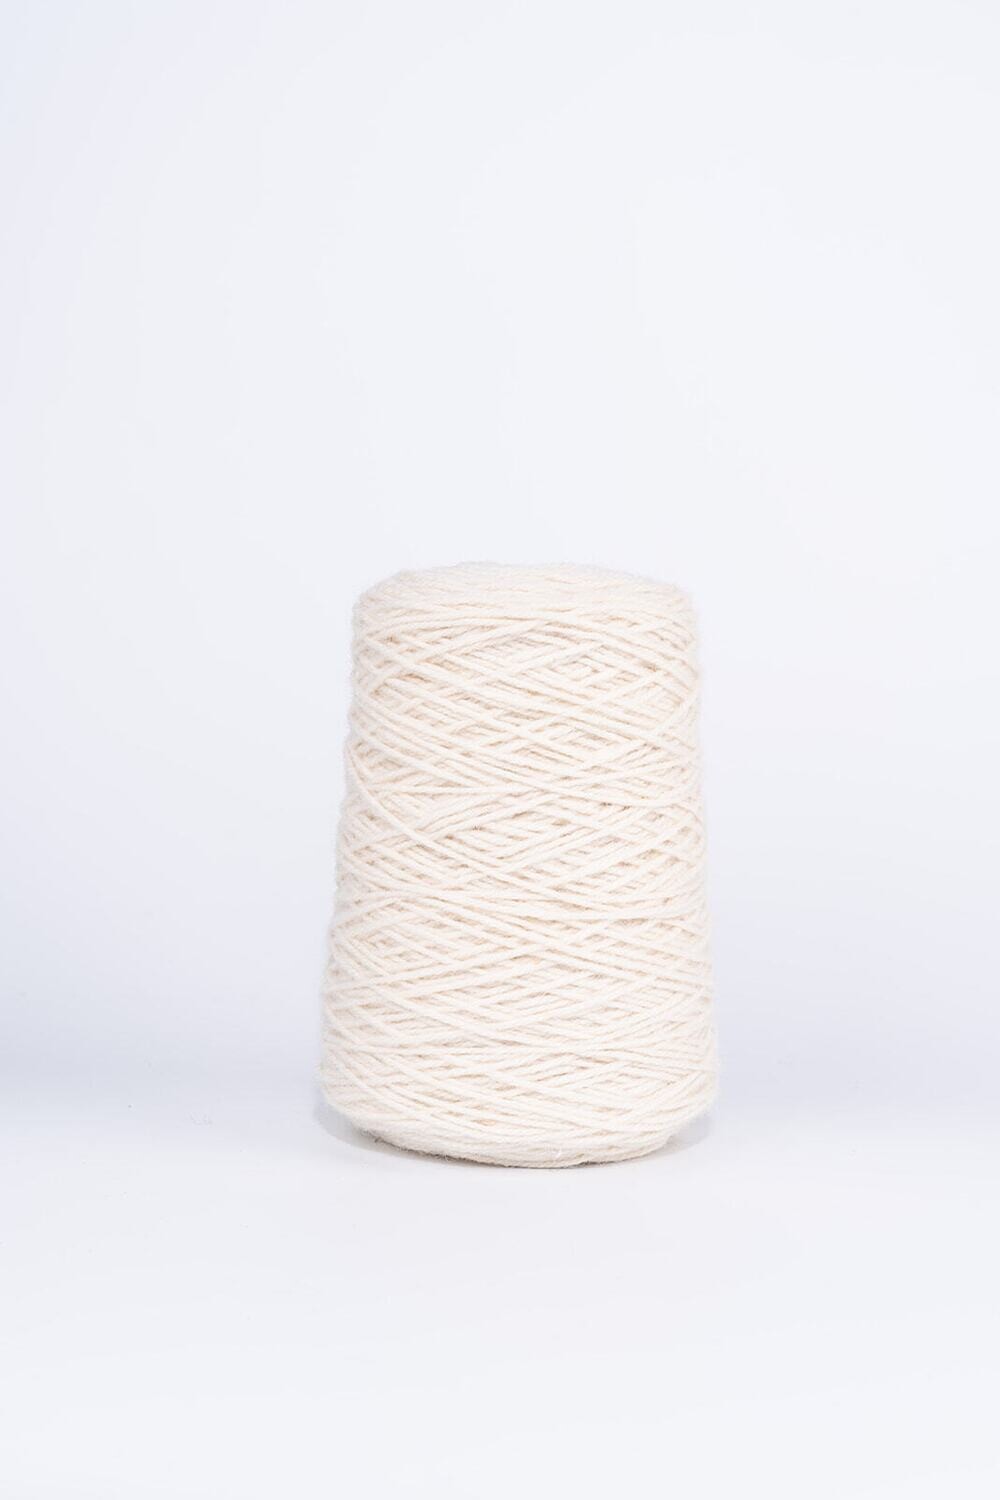 100% Wool Rug Yarn On Cones - White